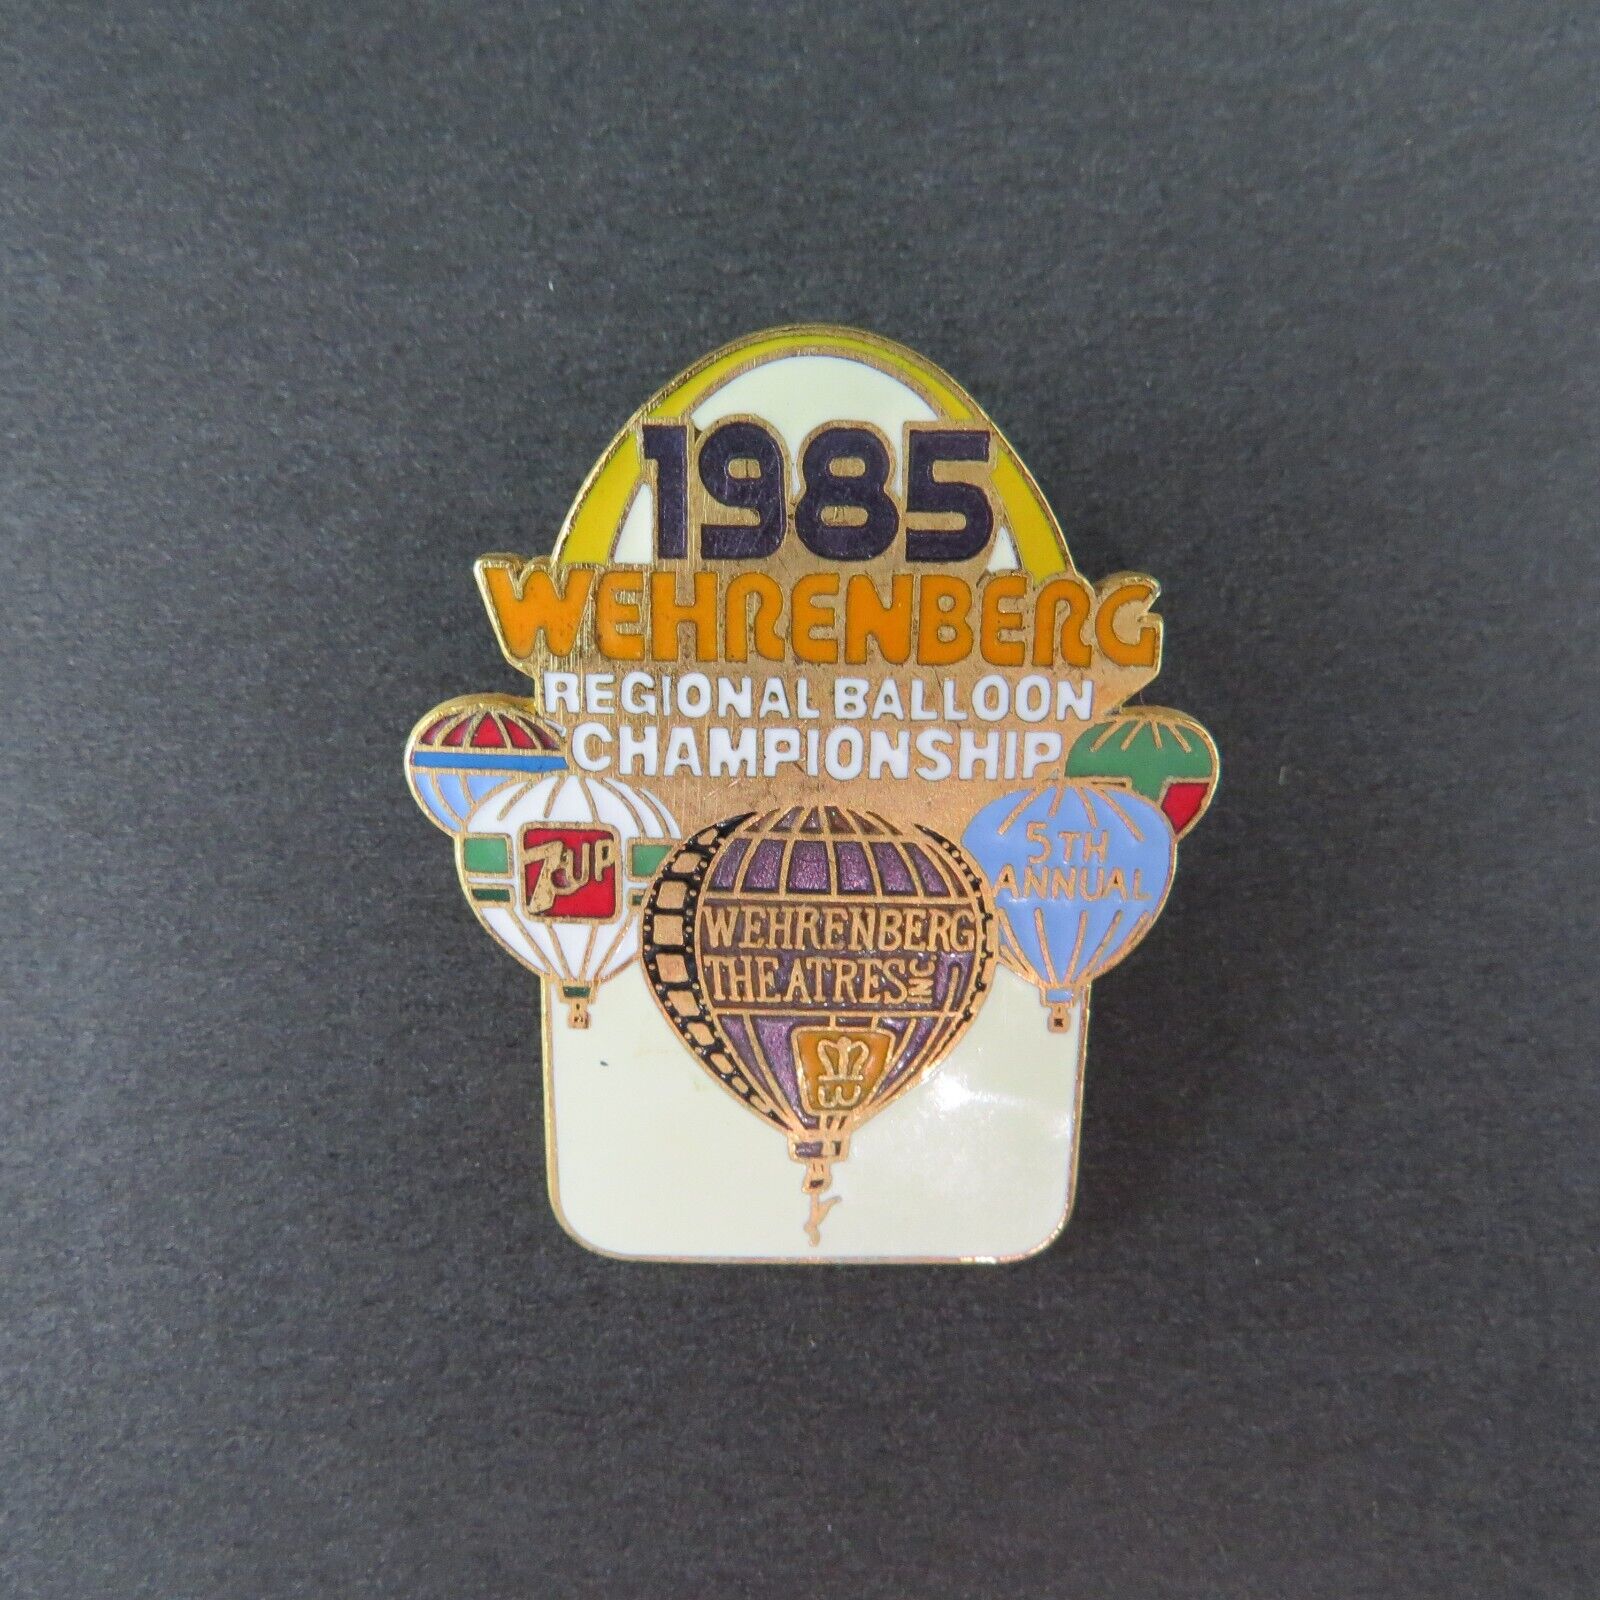 Vintage 1985 Wehrenberg Regional Balloon Championship Pin